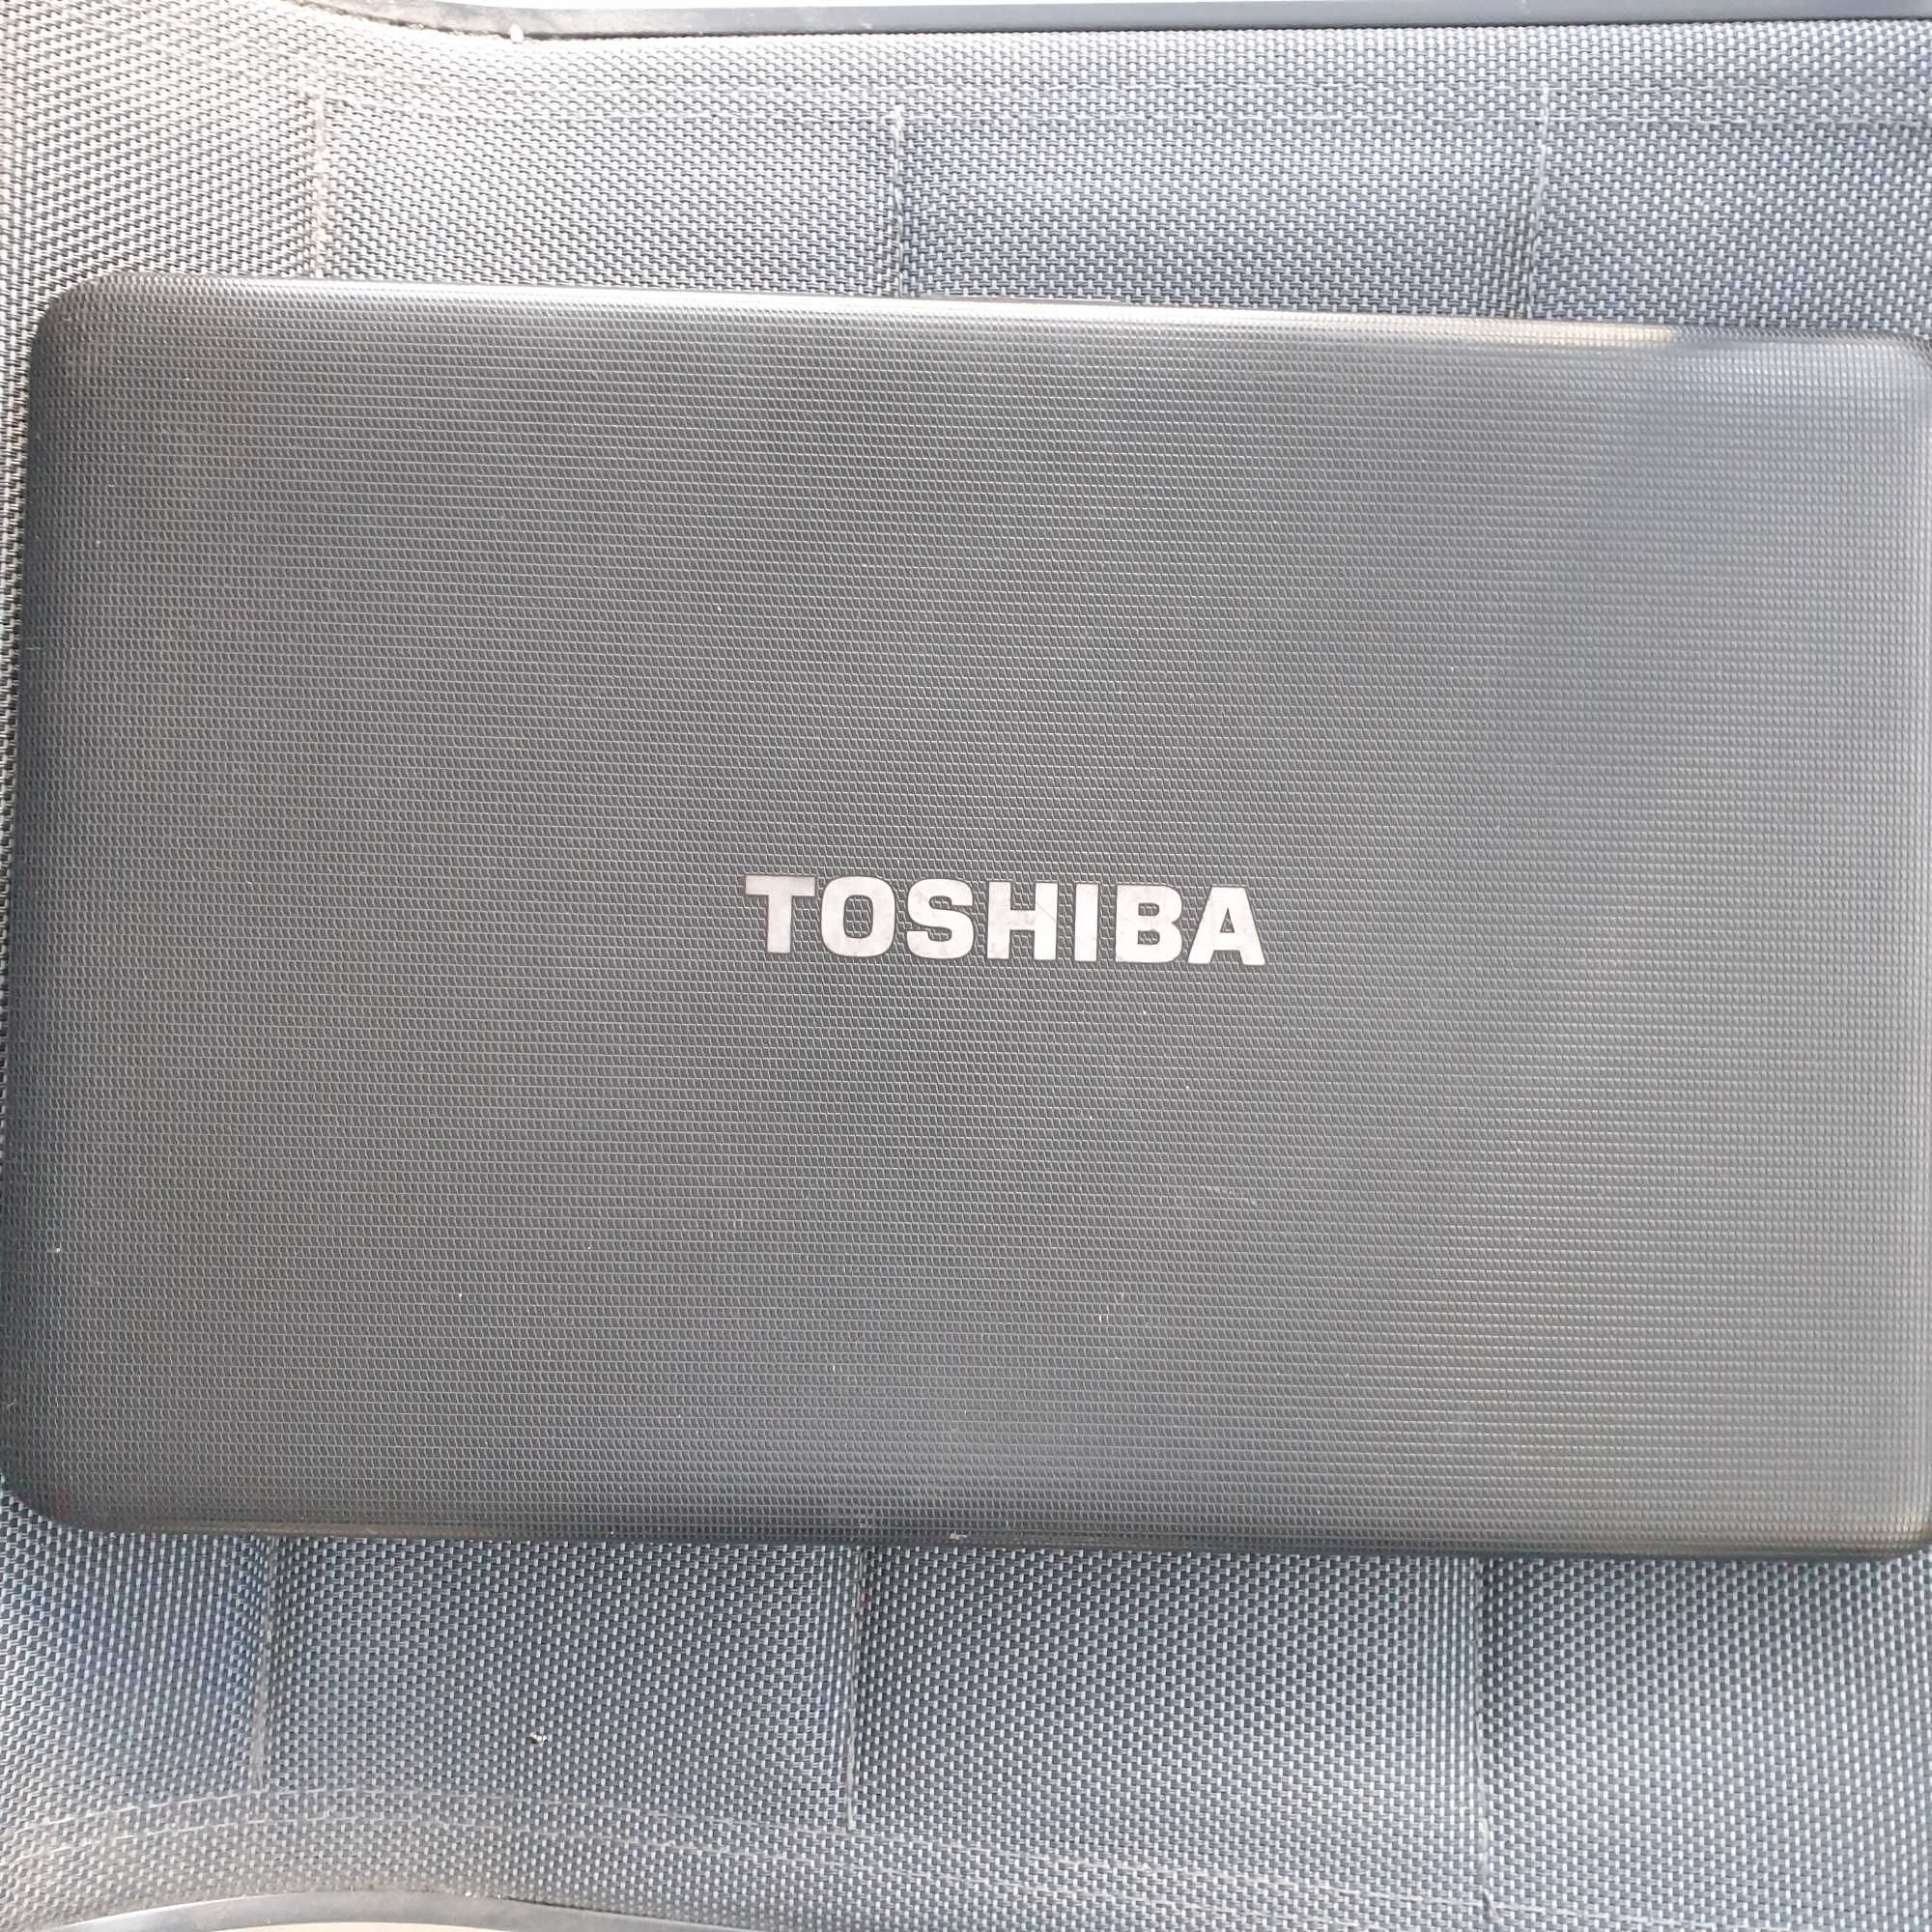 Toshiba C850 processador i3-2350, sem anomalia bom estado geral